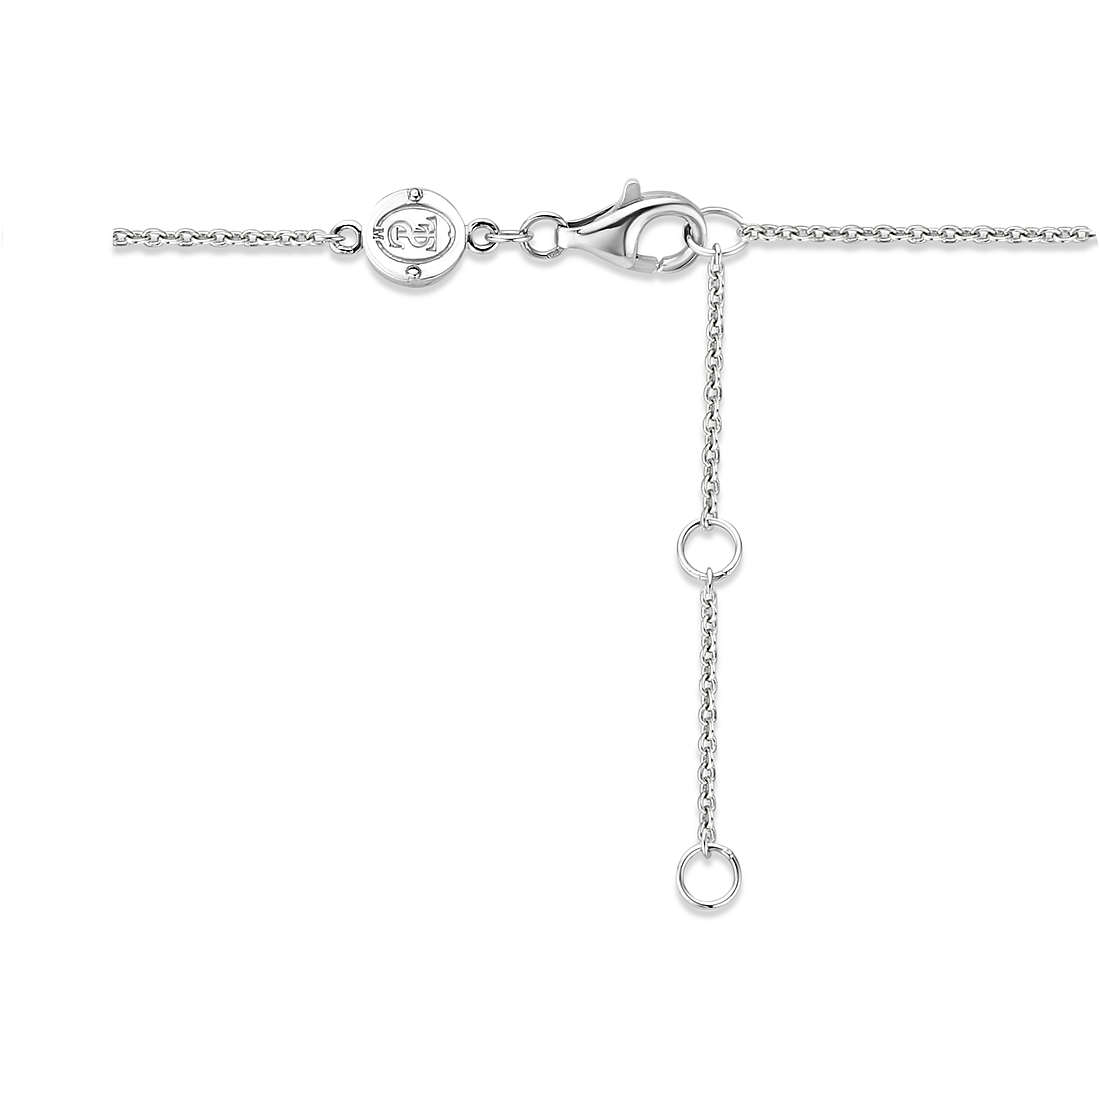 TI SENTO MILANO bracelet woman Bracelet with 925 Silver Charms/Beads jewel 2994MW